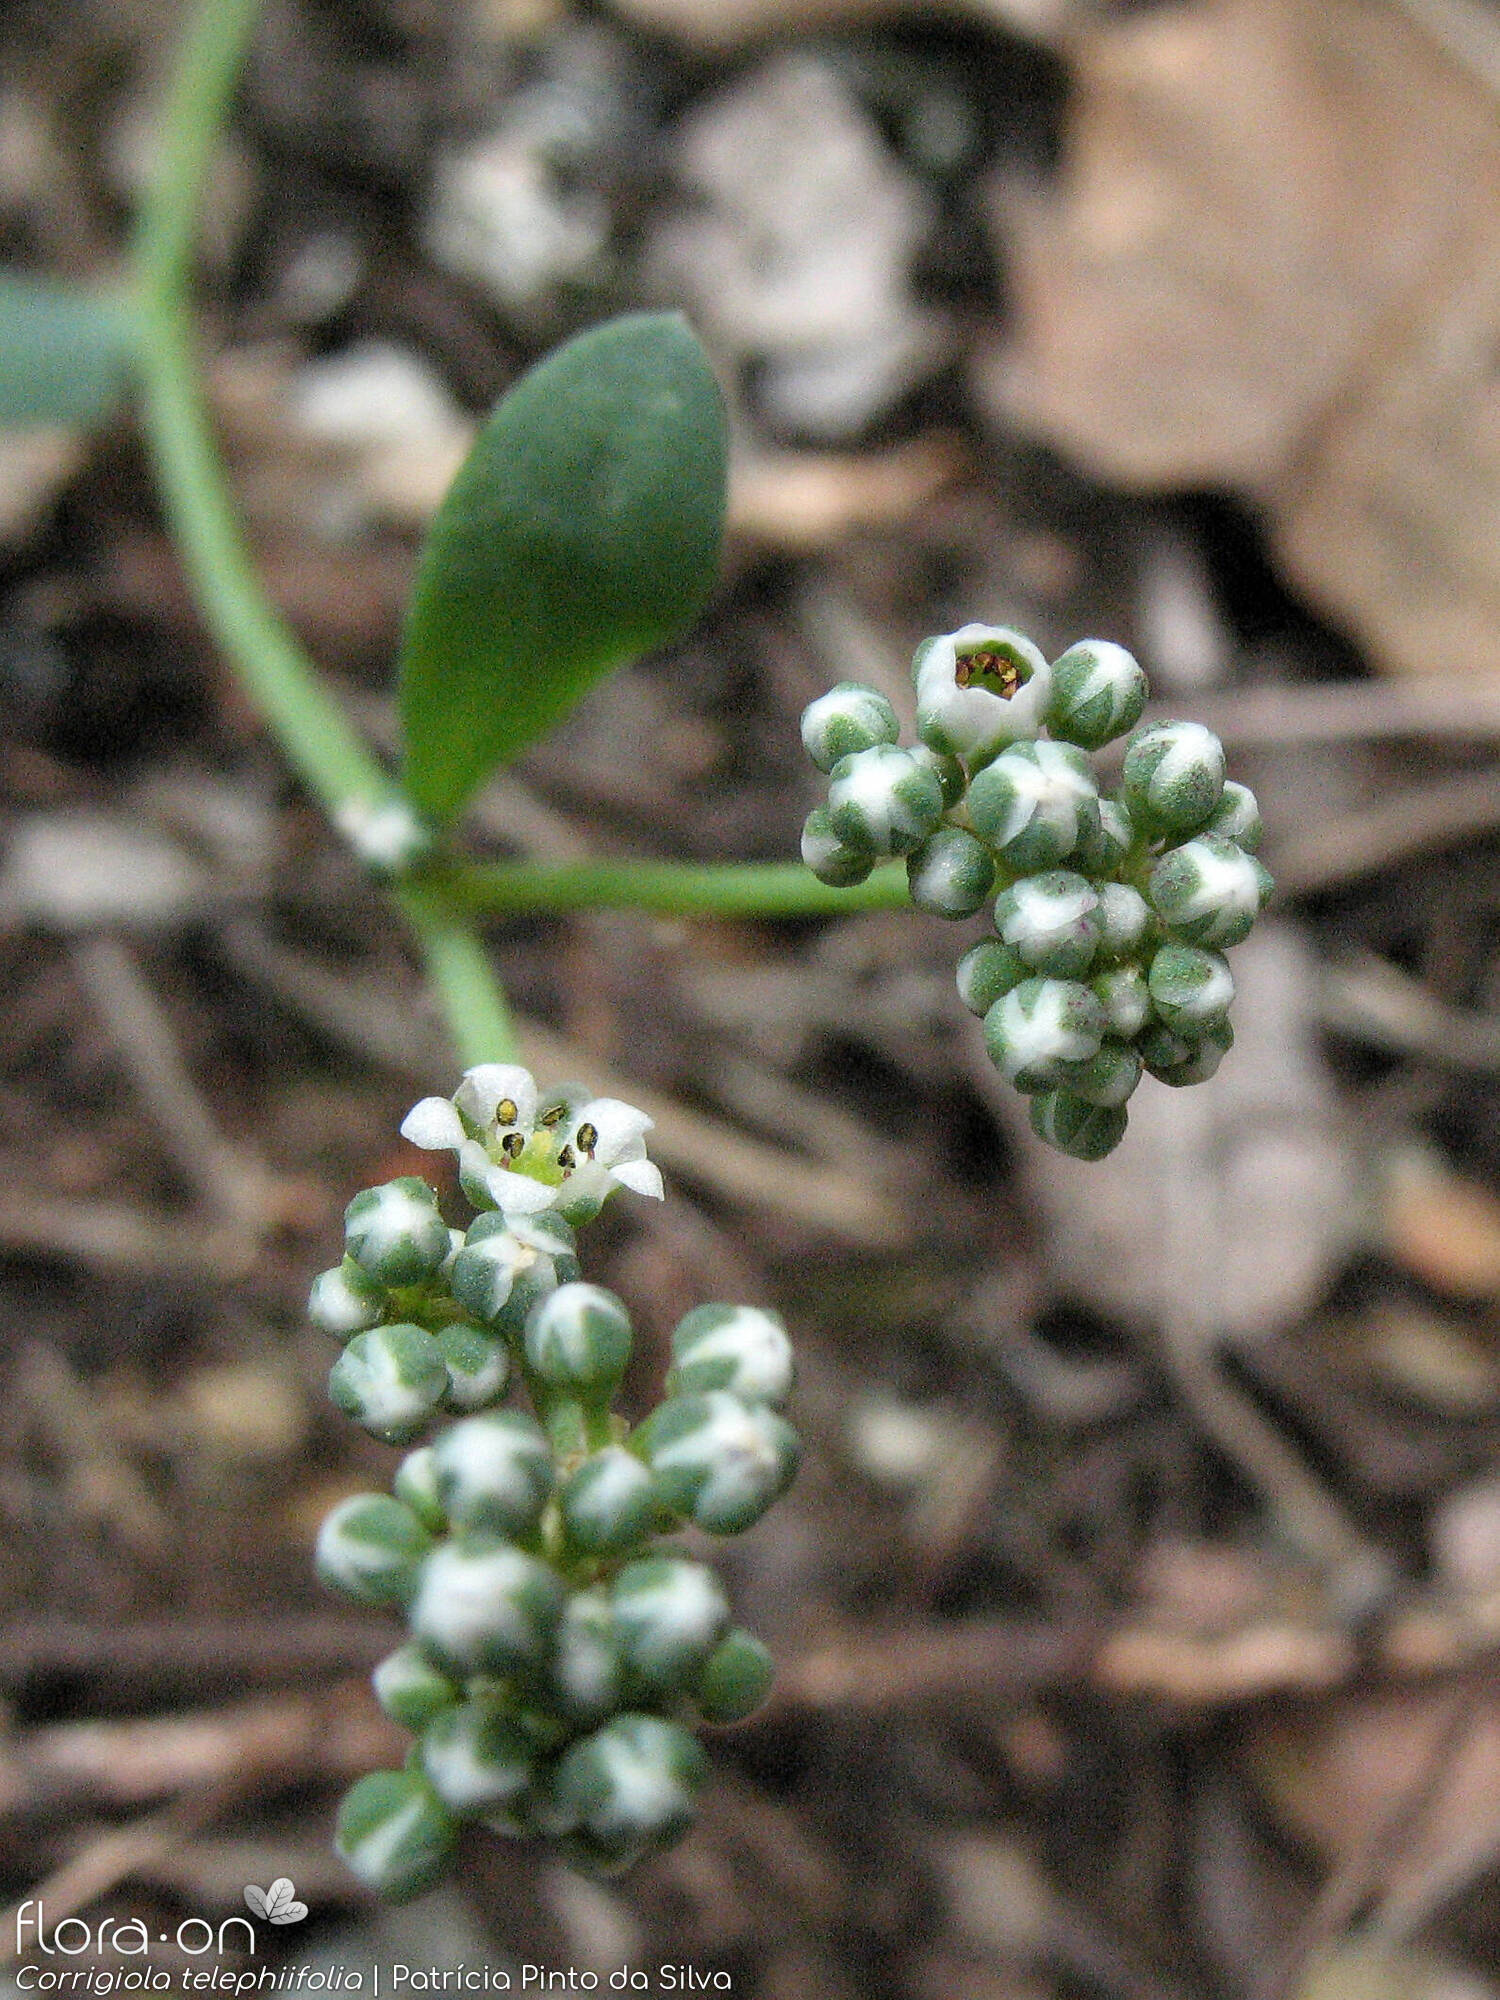 Corrigiola telephiifolia - Flor (geral) | Patrícia Pinto da Silva; CC BY-NC 4.0